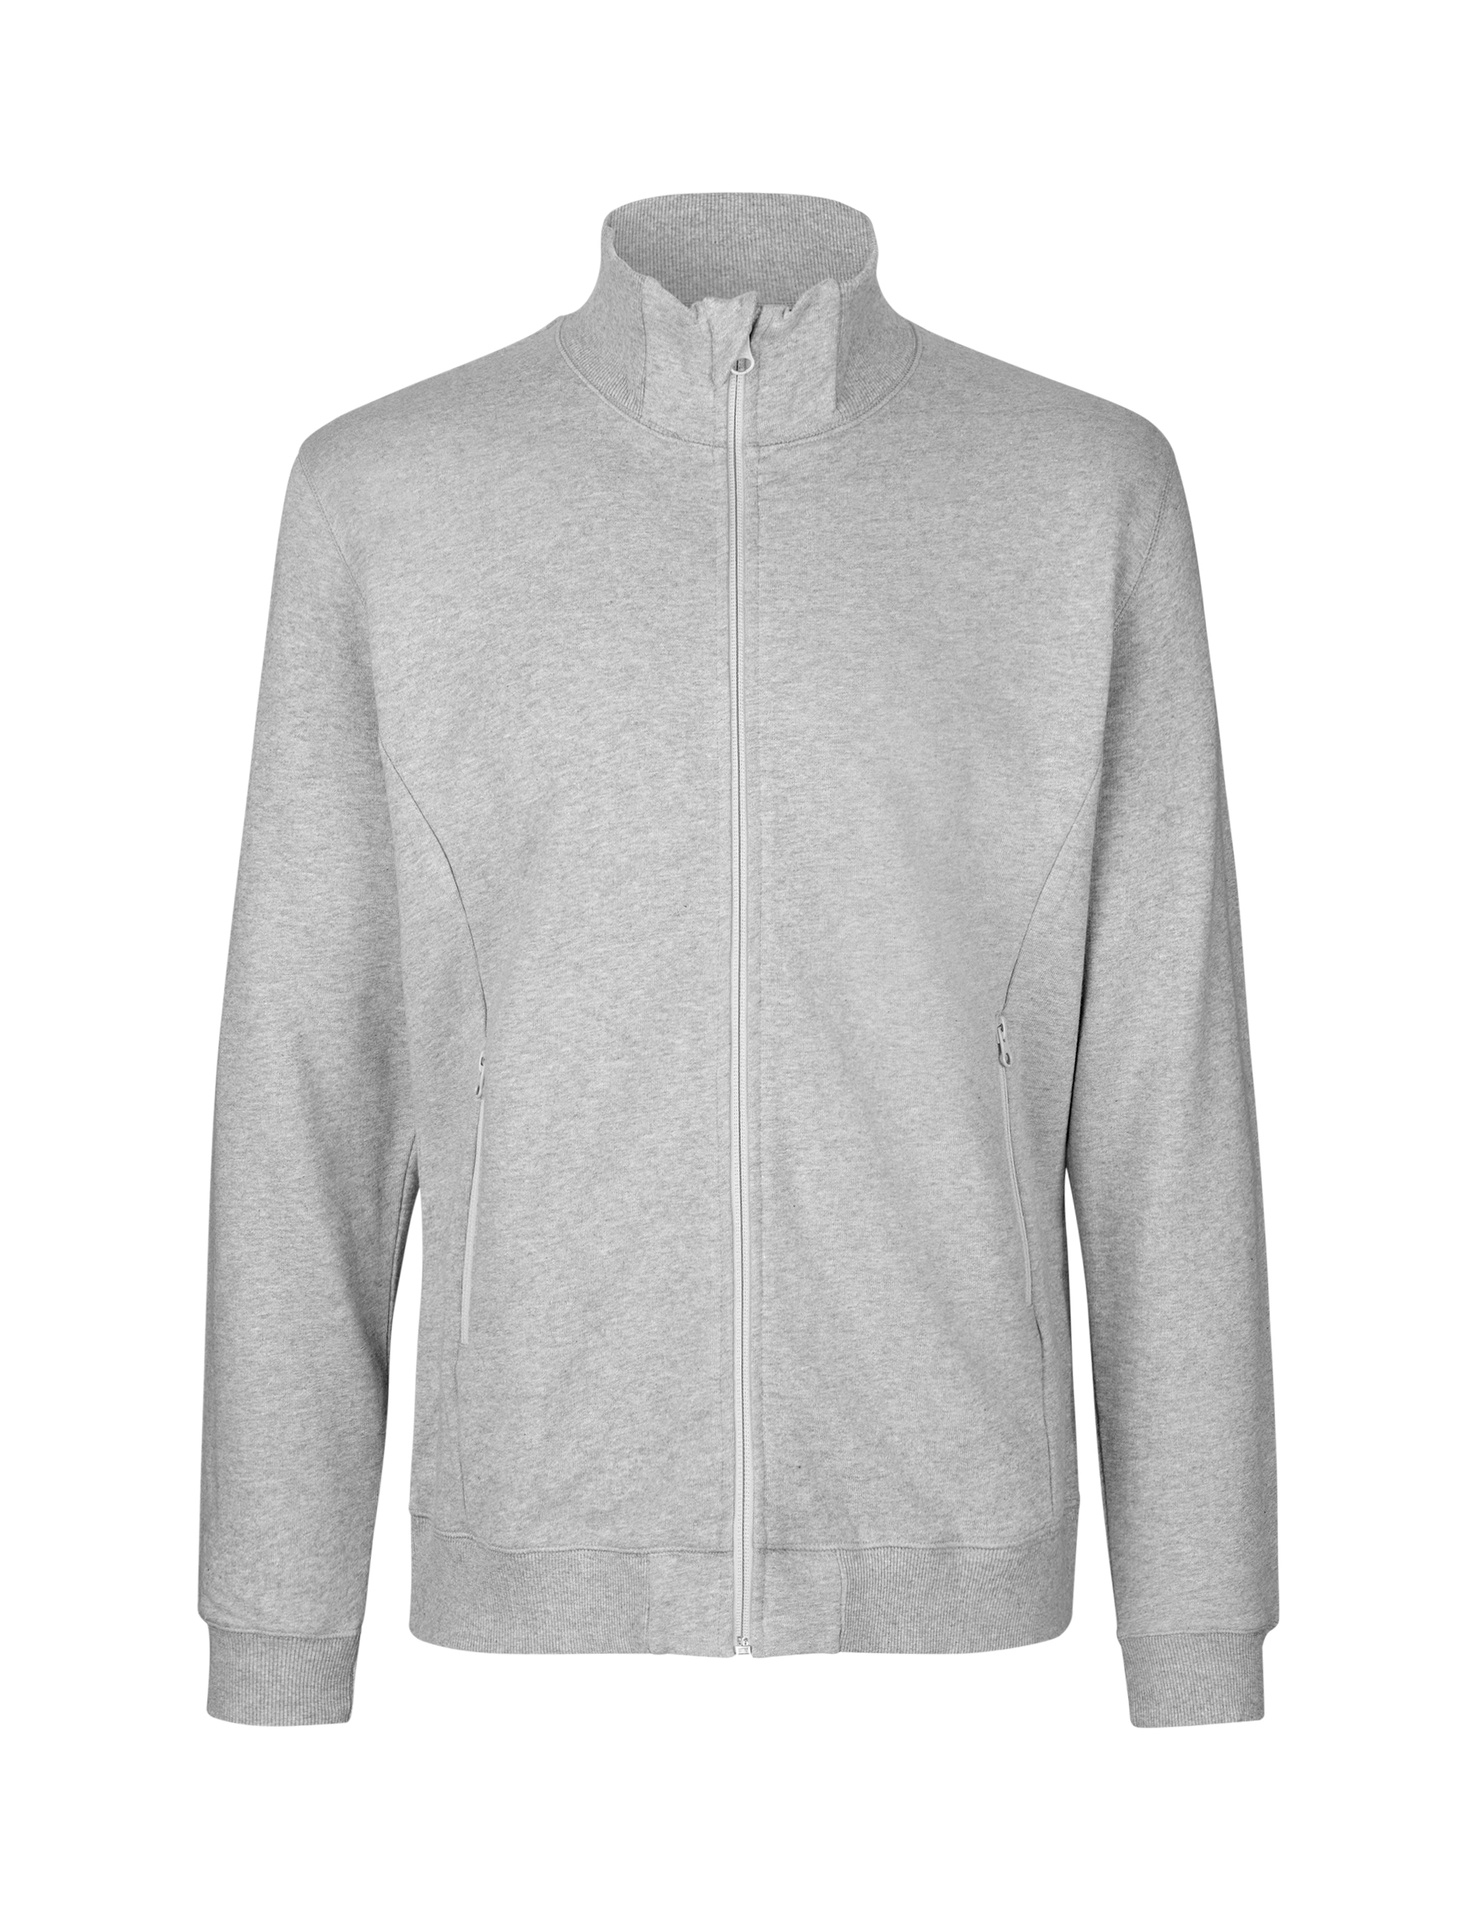 [PR/03652] Unisex High Neck Jacket (Sport Grey 21, M)